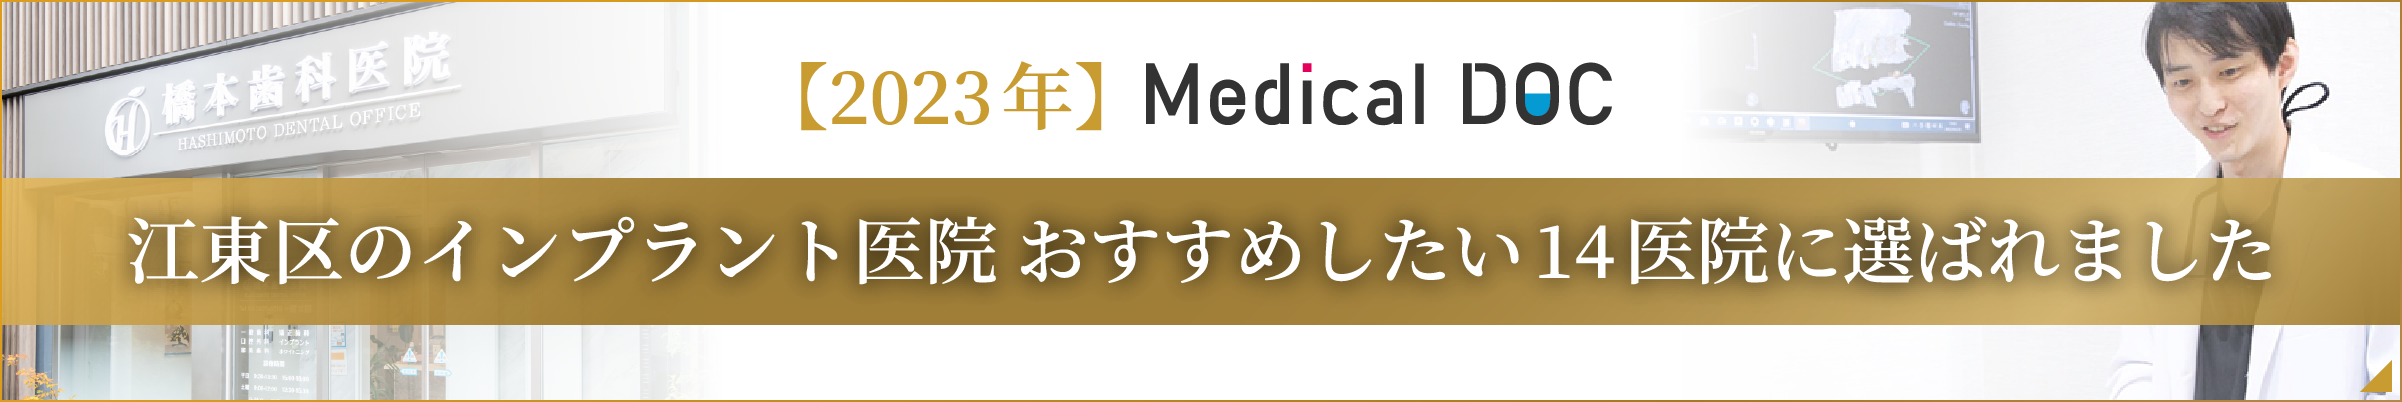 MedicalDOC 江東区のインプラント医院 おすすめしたい14医院に選ばれました